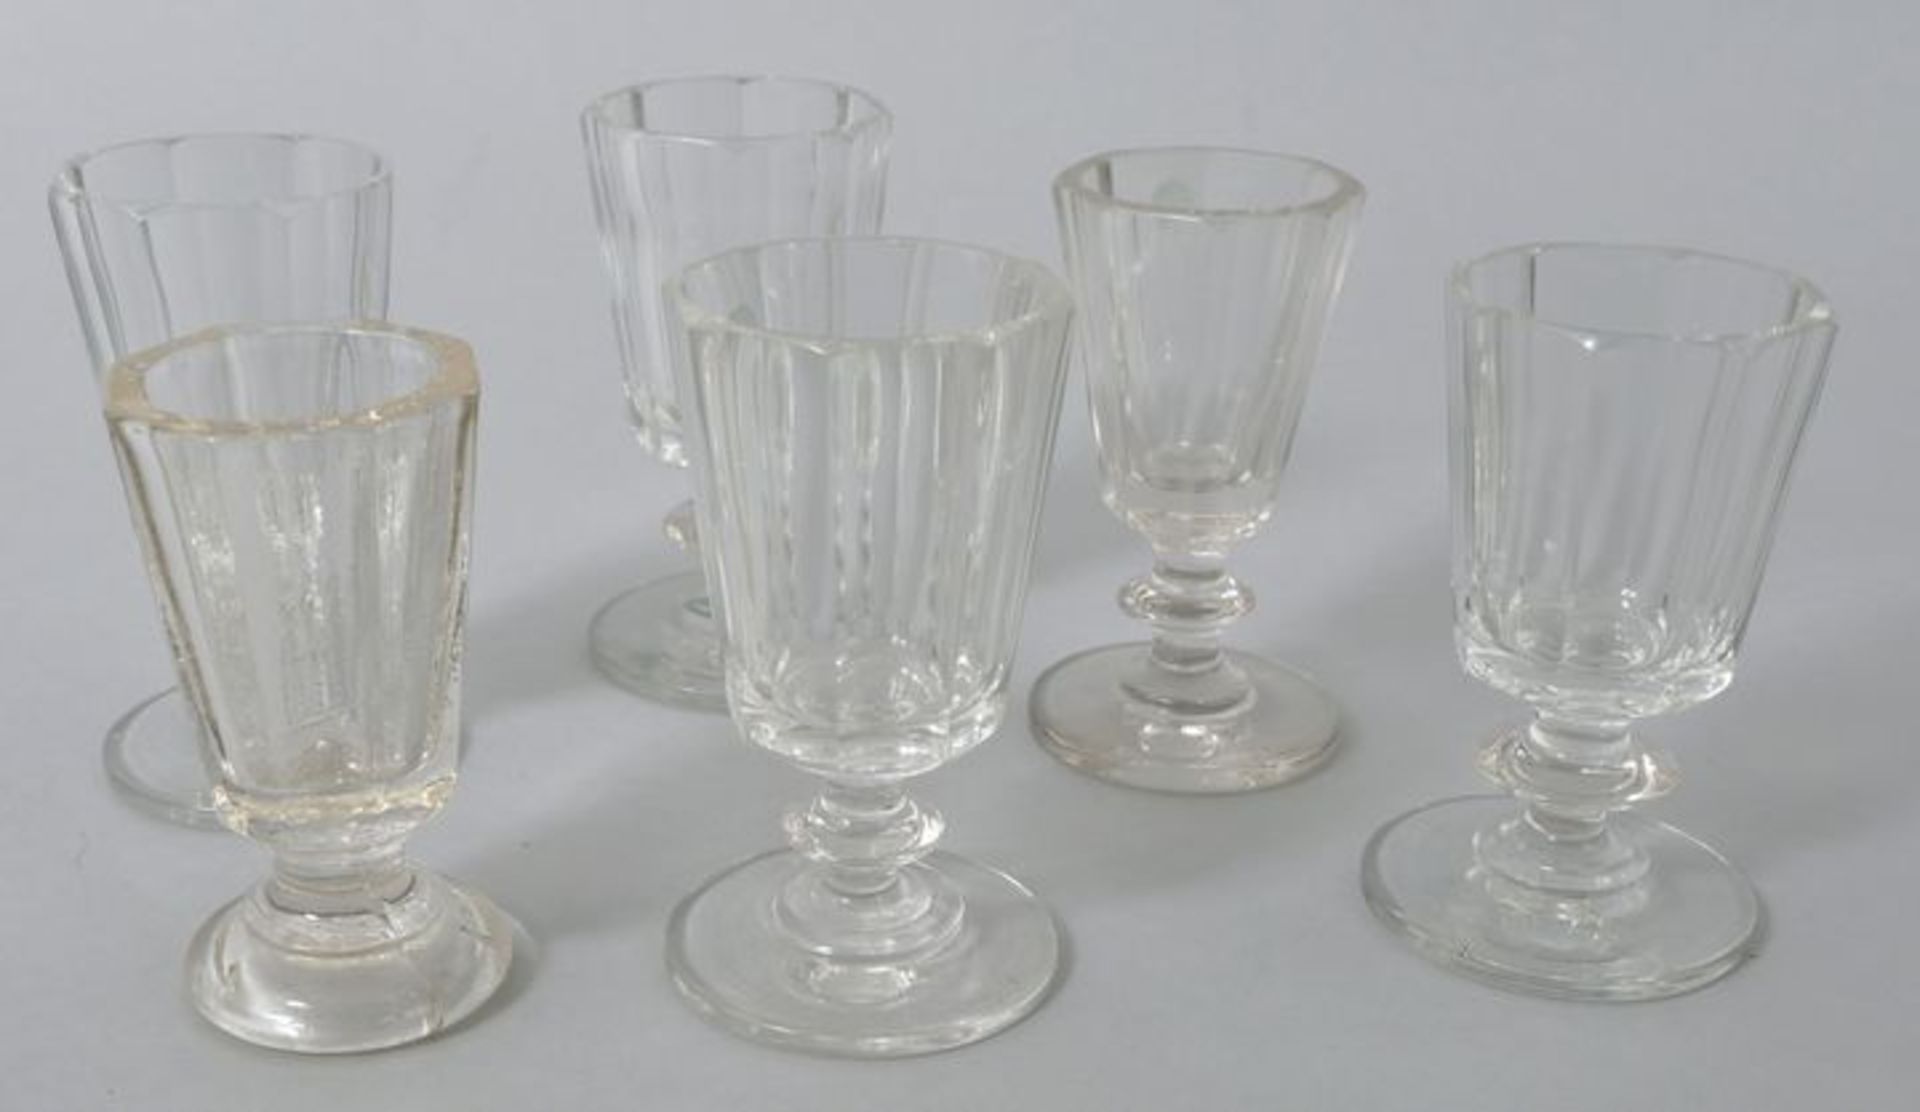 6 Kelchgläser (Schnaps/ Süßwein), deutsch, 2. H. 19. Jh.Farbloses Glas, 1 St. Pressglas, S